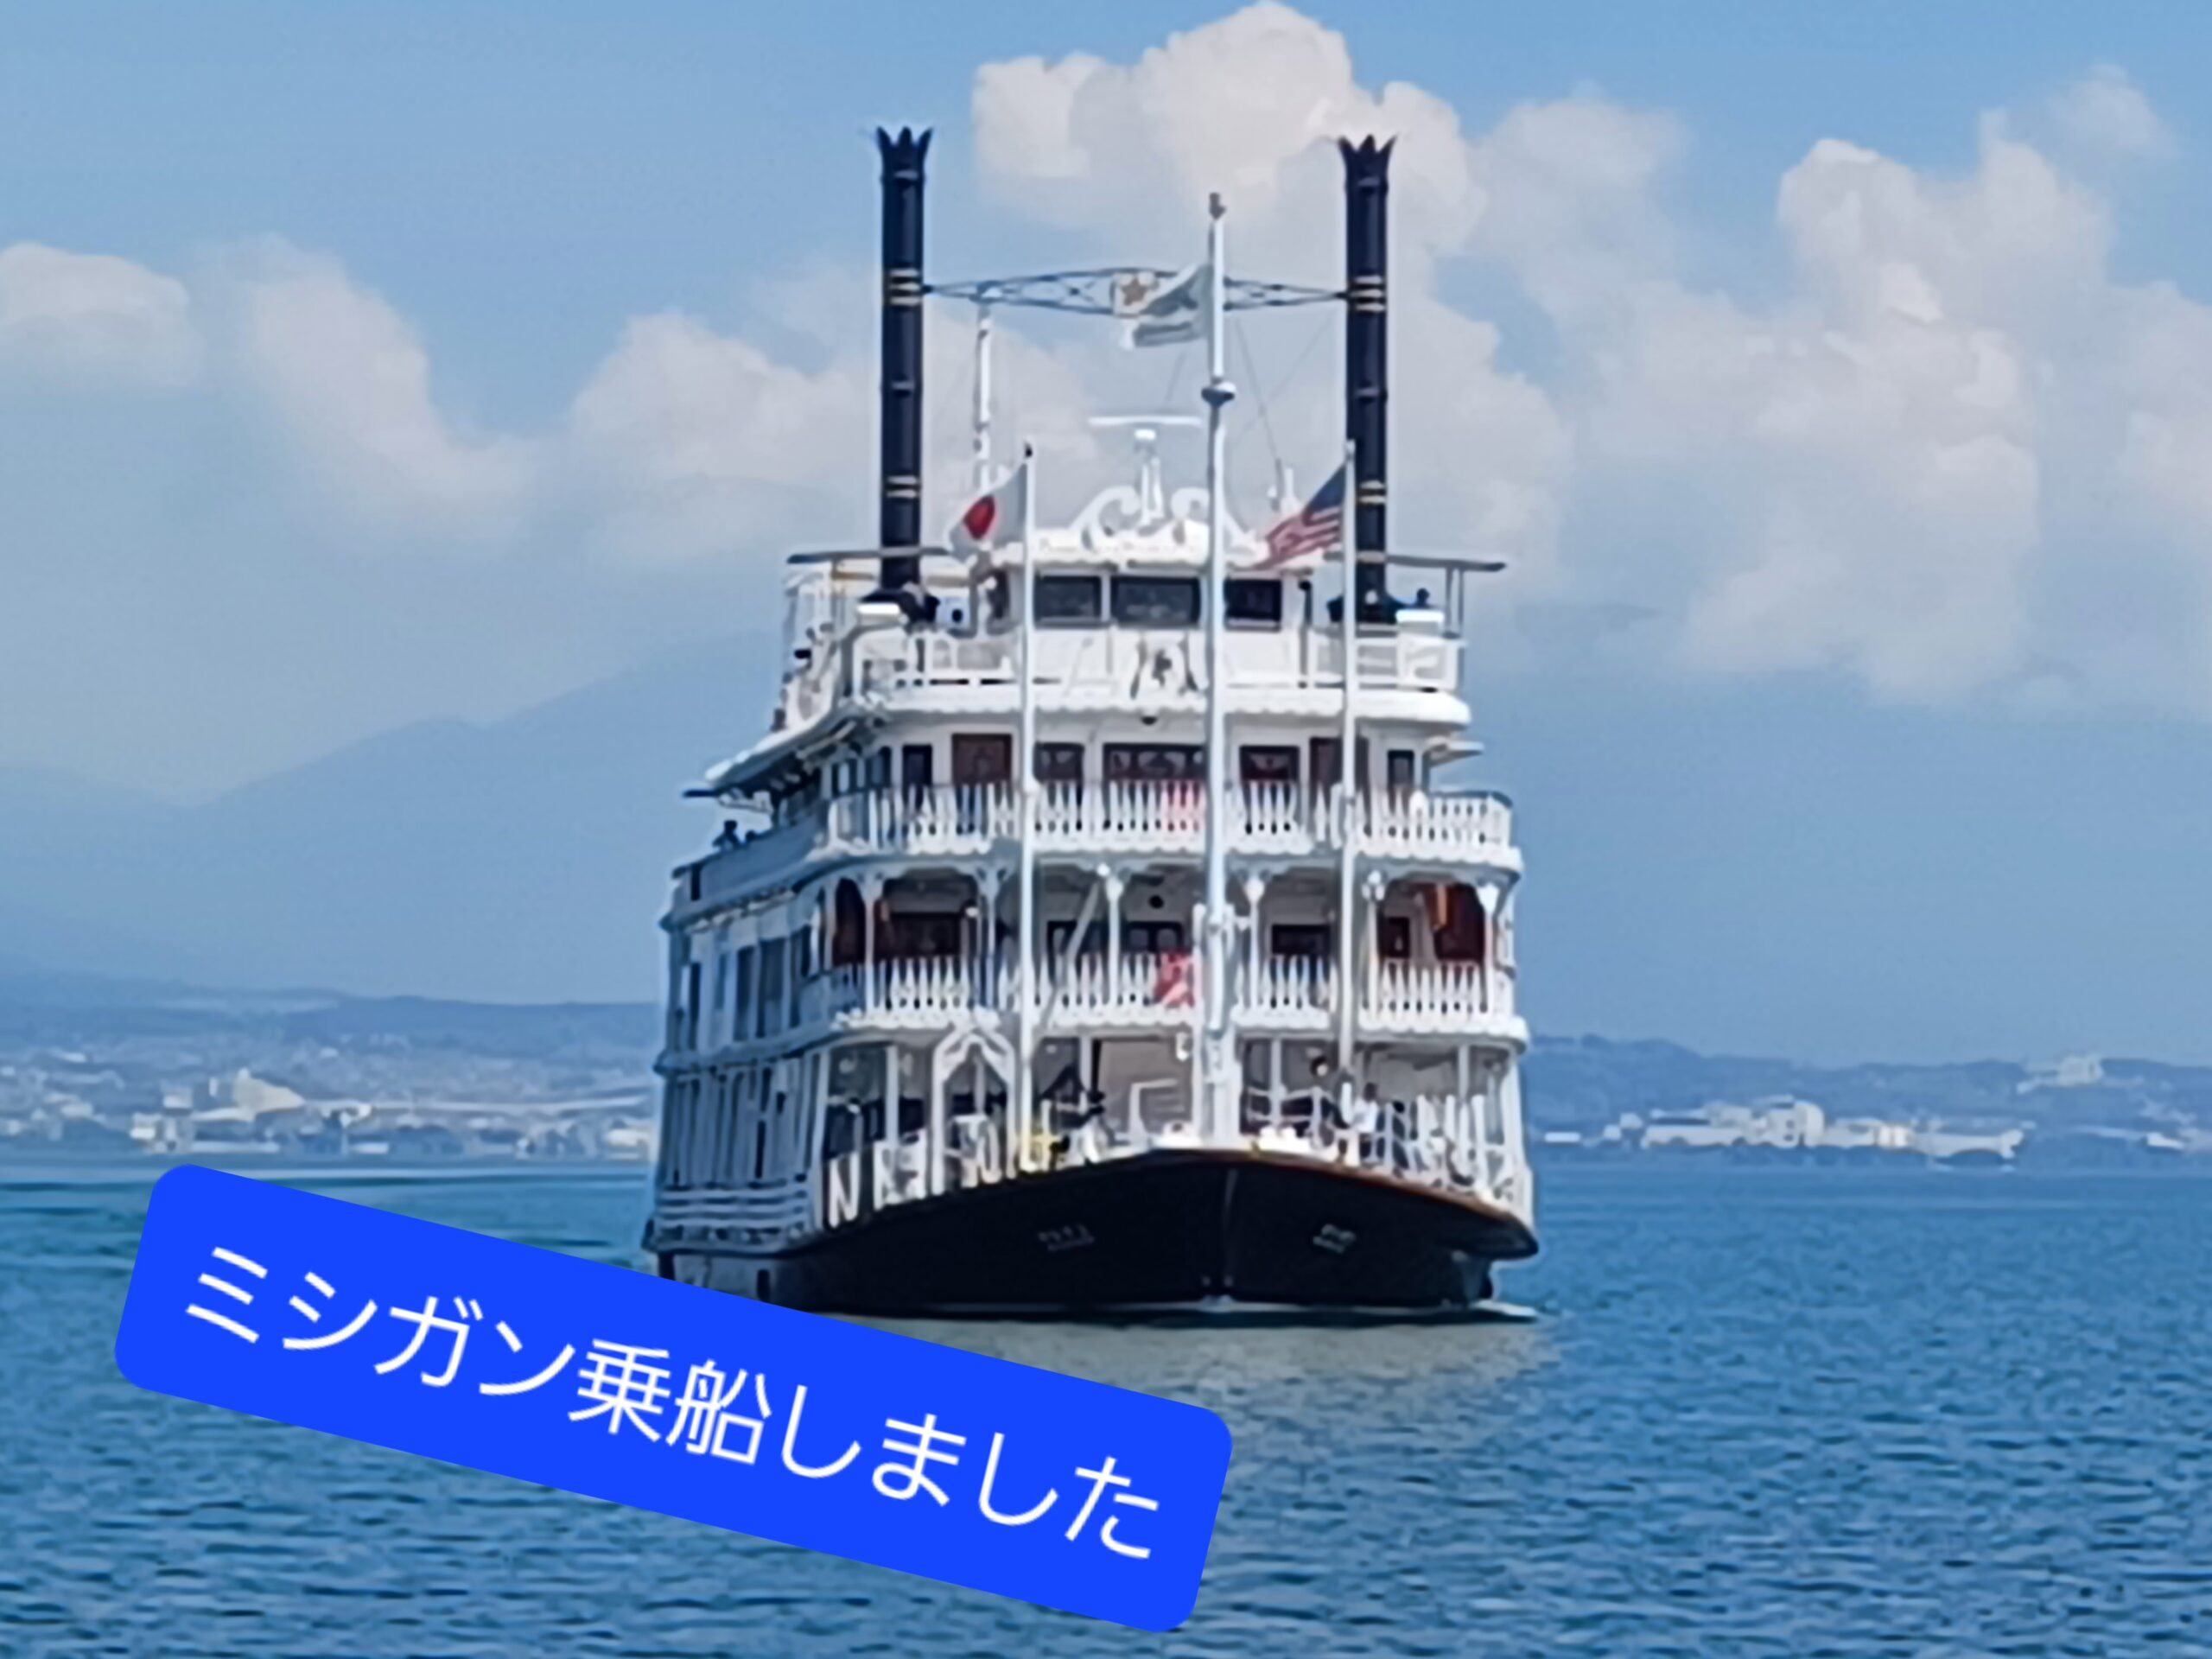 真夏のミシガンクルーズ🚢(びわ湖)&滋賀県名所散策の旅